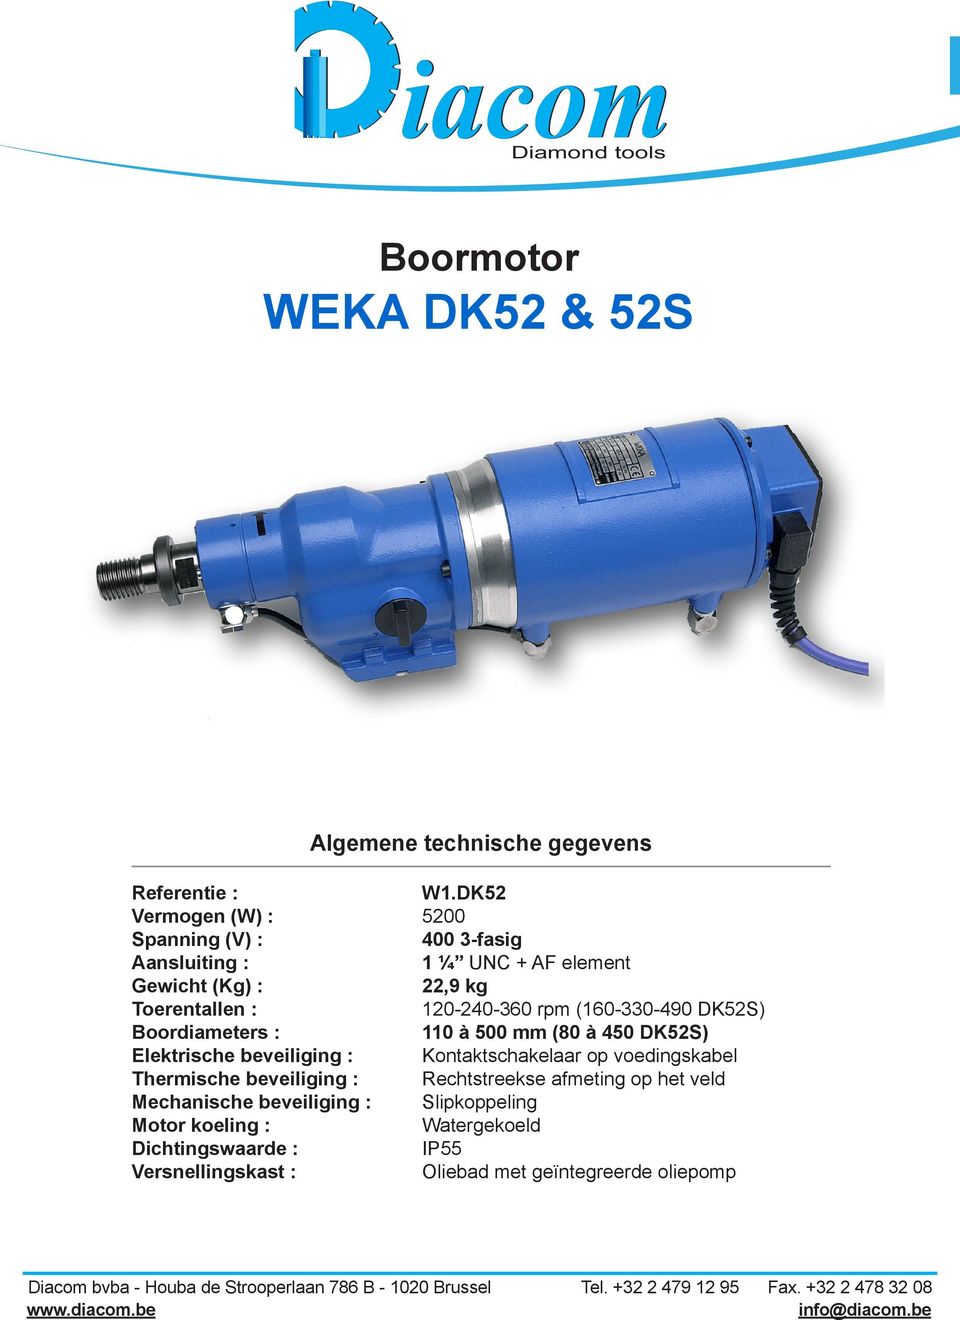 (160-330-490 DK52S) Boordiameters : 110 à 500 mm (80 à 450 DK52S) Elektrische beveiliging : Kontaktschakelaar op